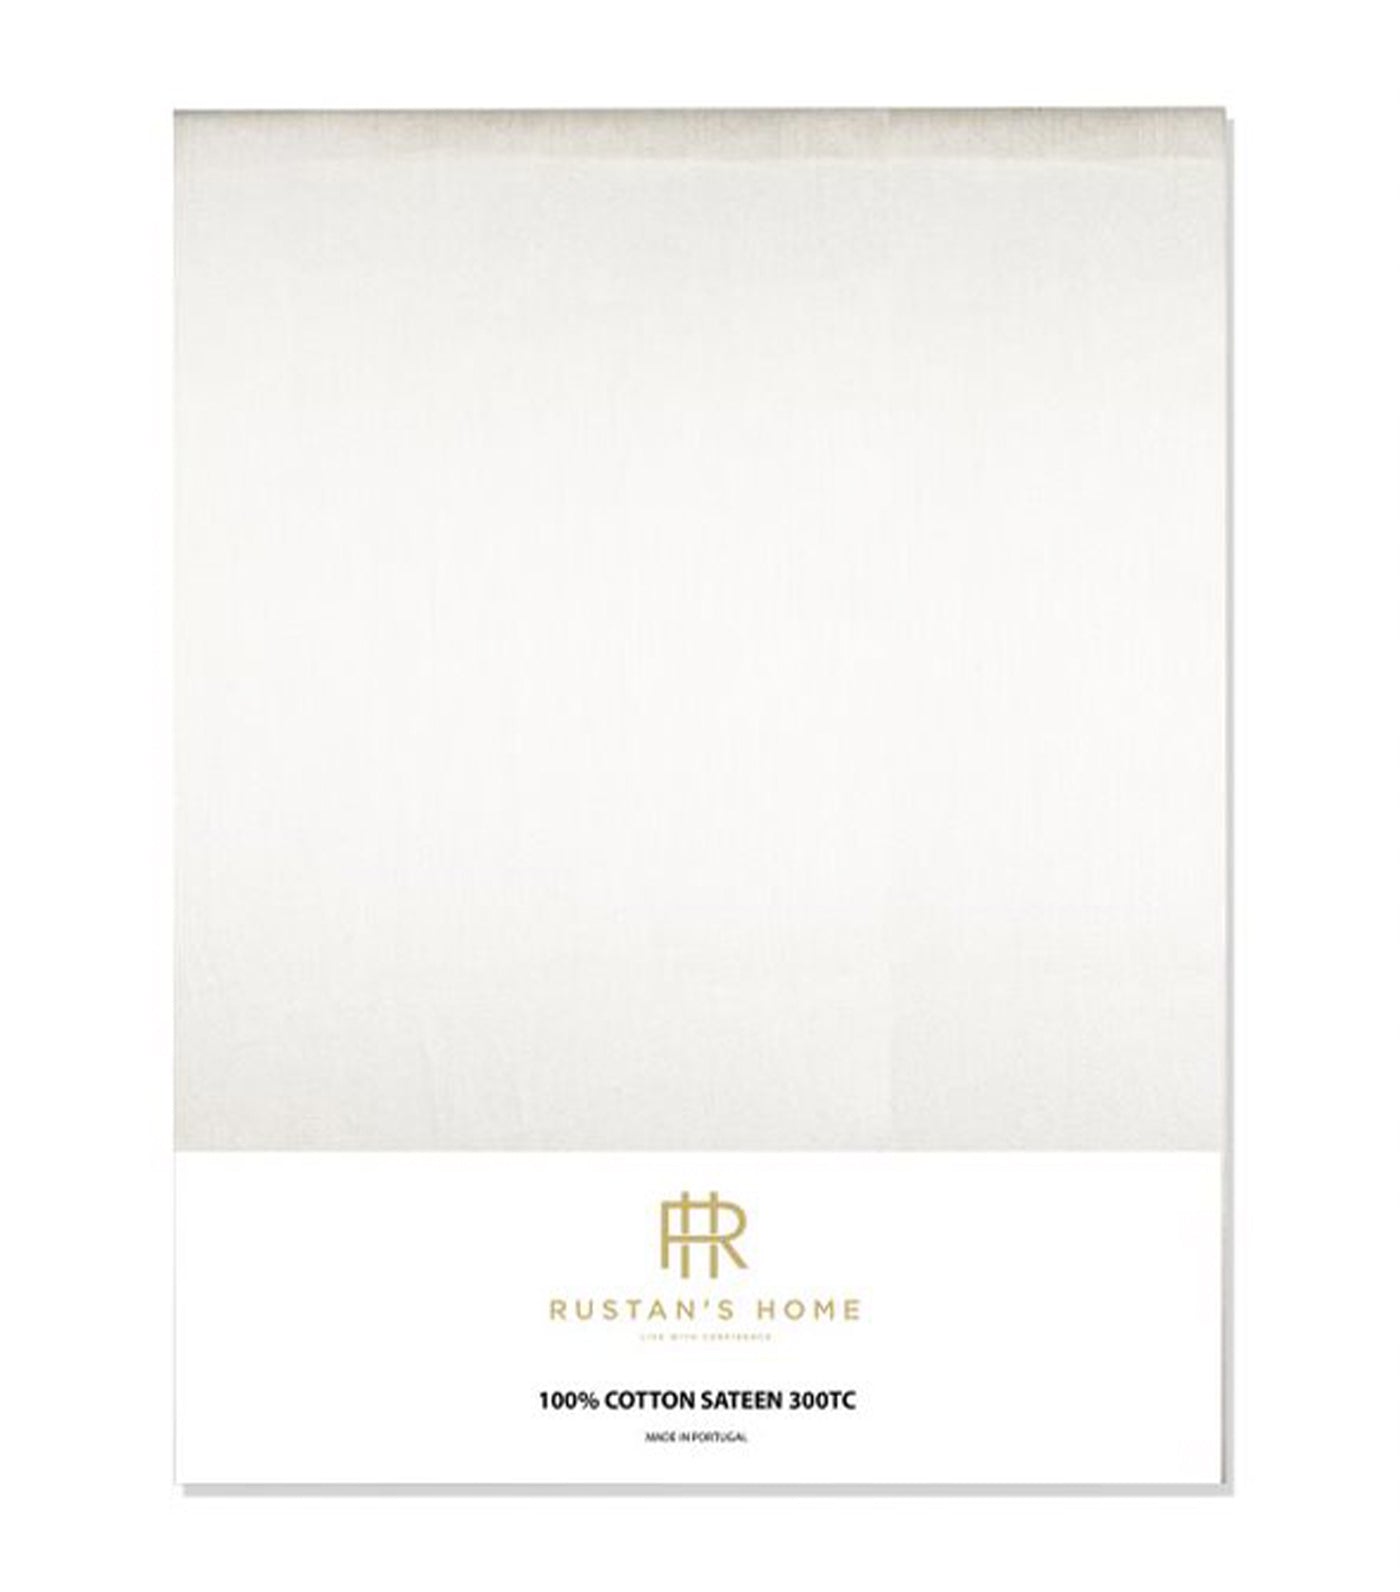 Rustan's Home 300TC Cotton Sateen Flat Sheet - White